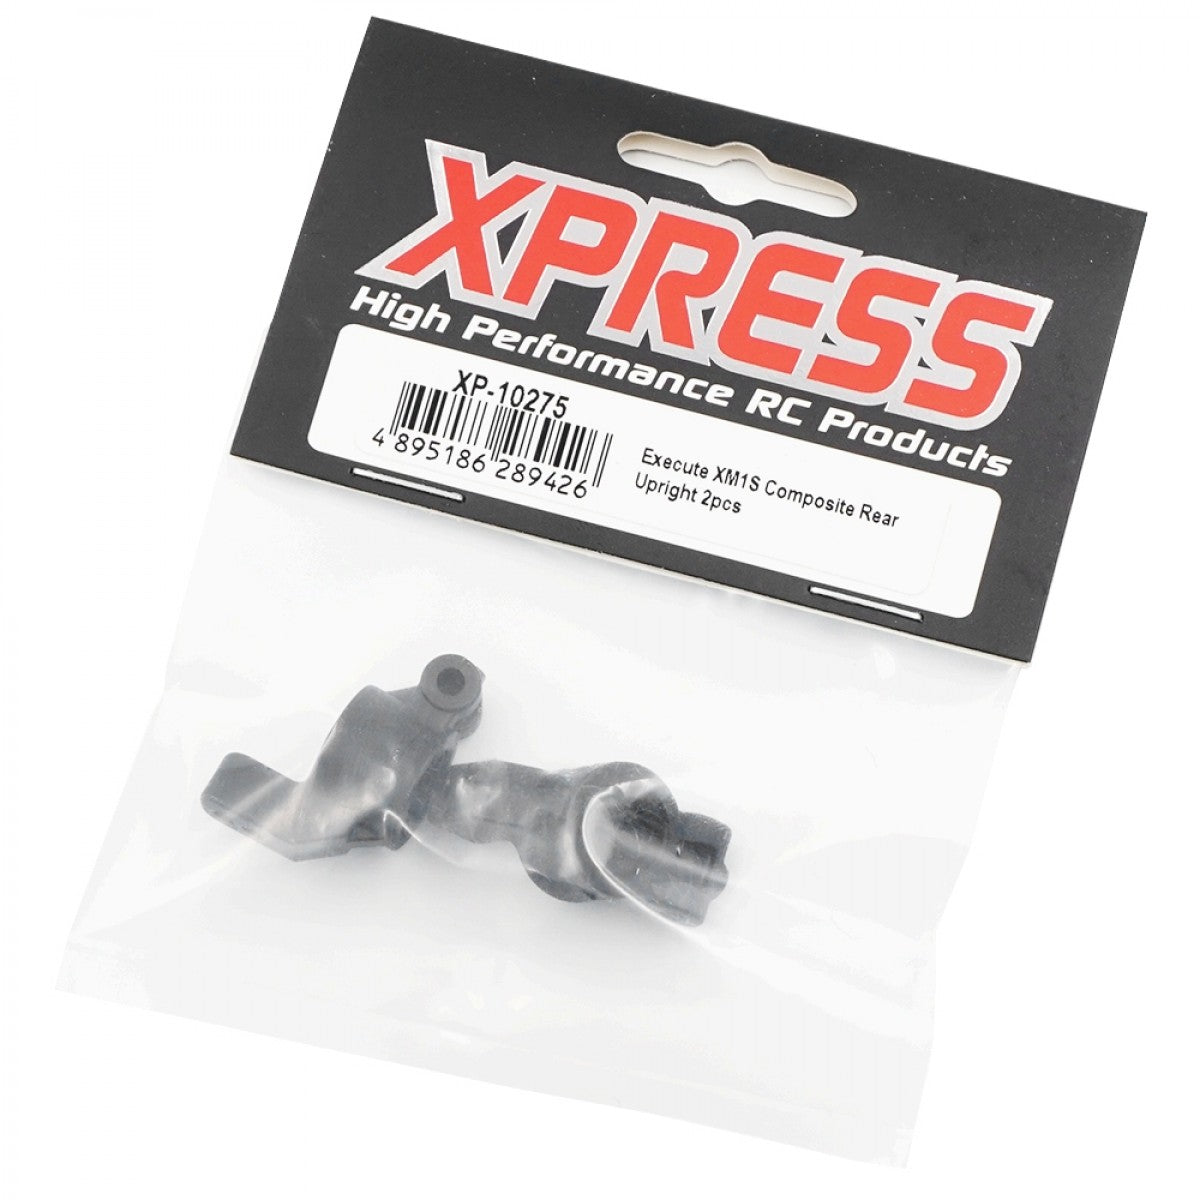 Xpress XP-10275 Composite Rear Upright for XM1S FM1S (2pcs)